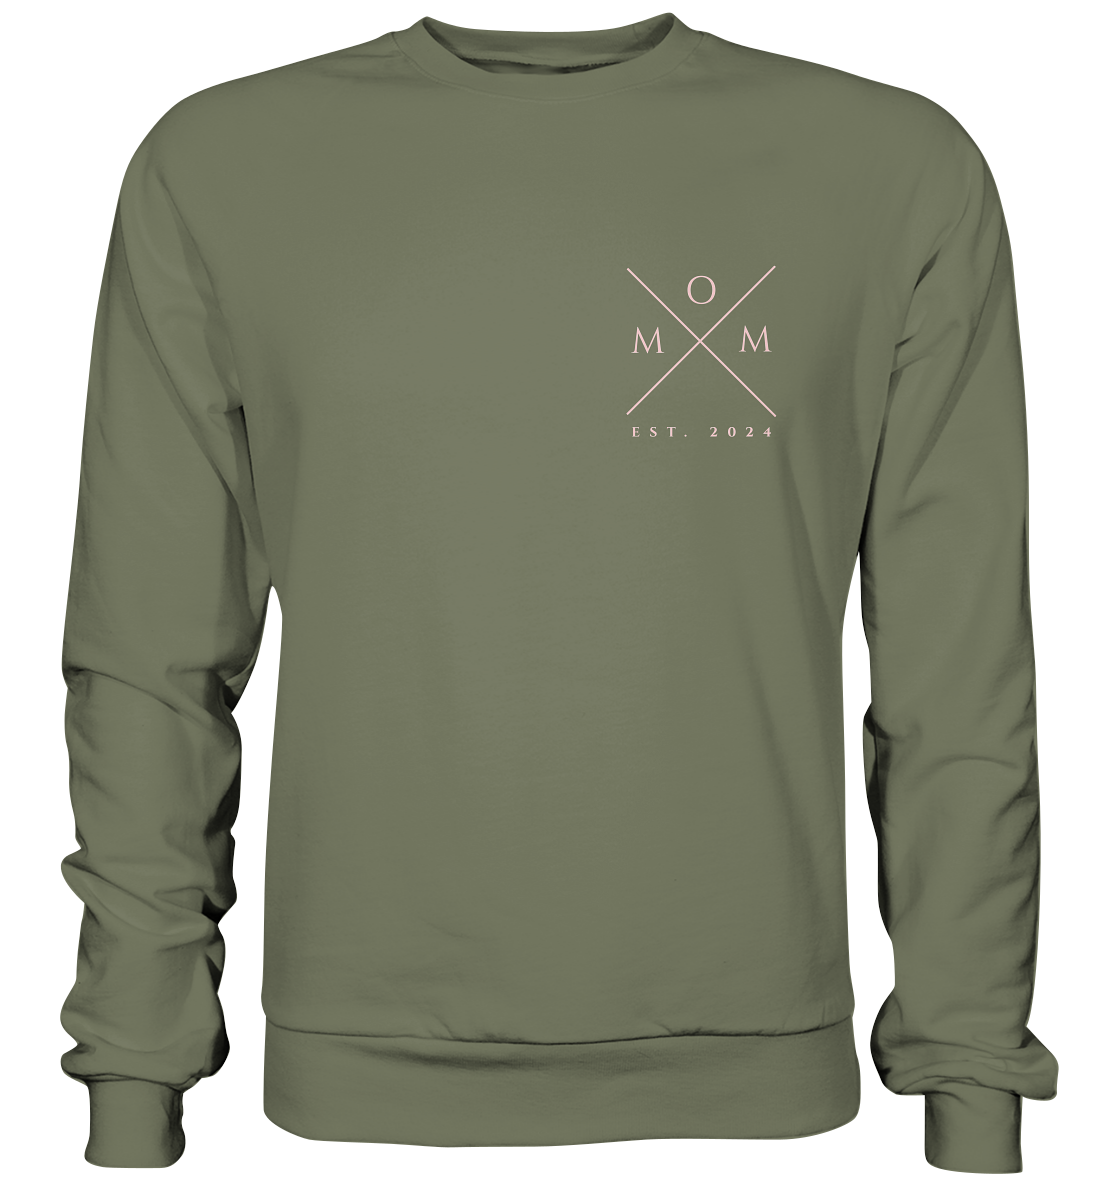 MOM Cross Sweater, Datum personalisierbar - Premium Sweatshirt